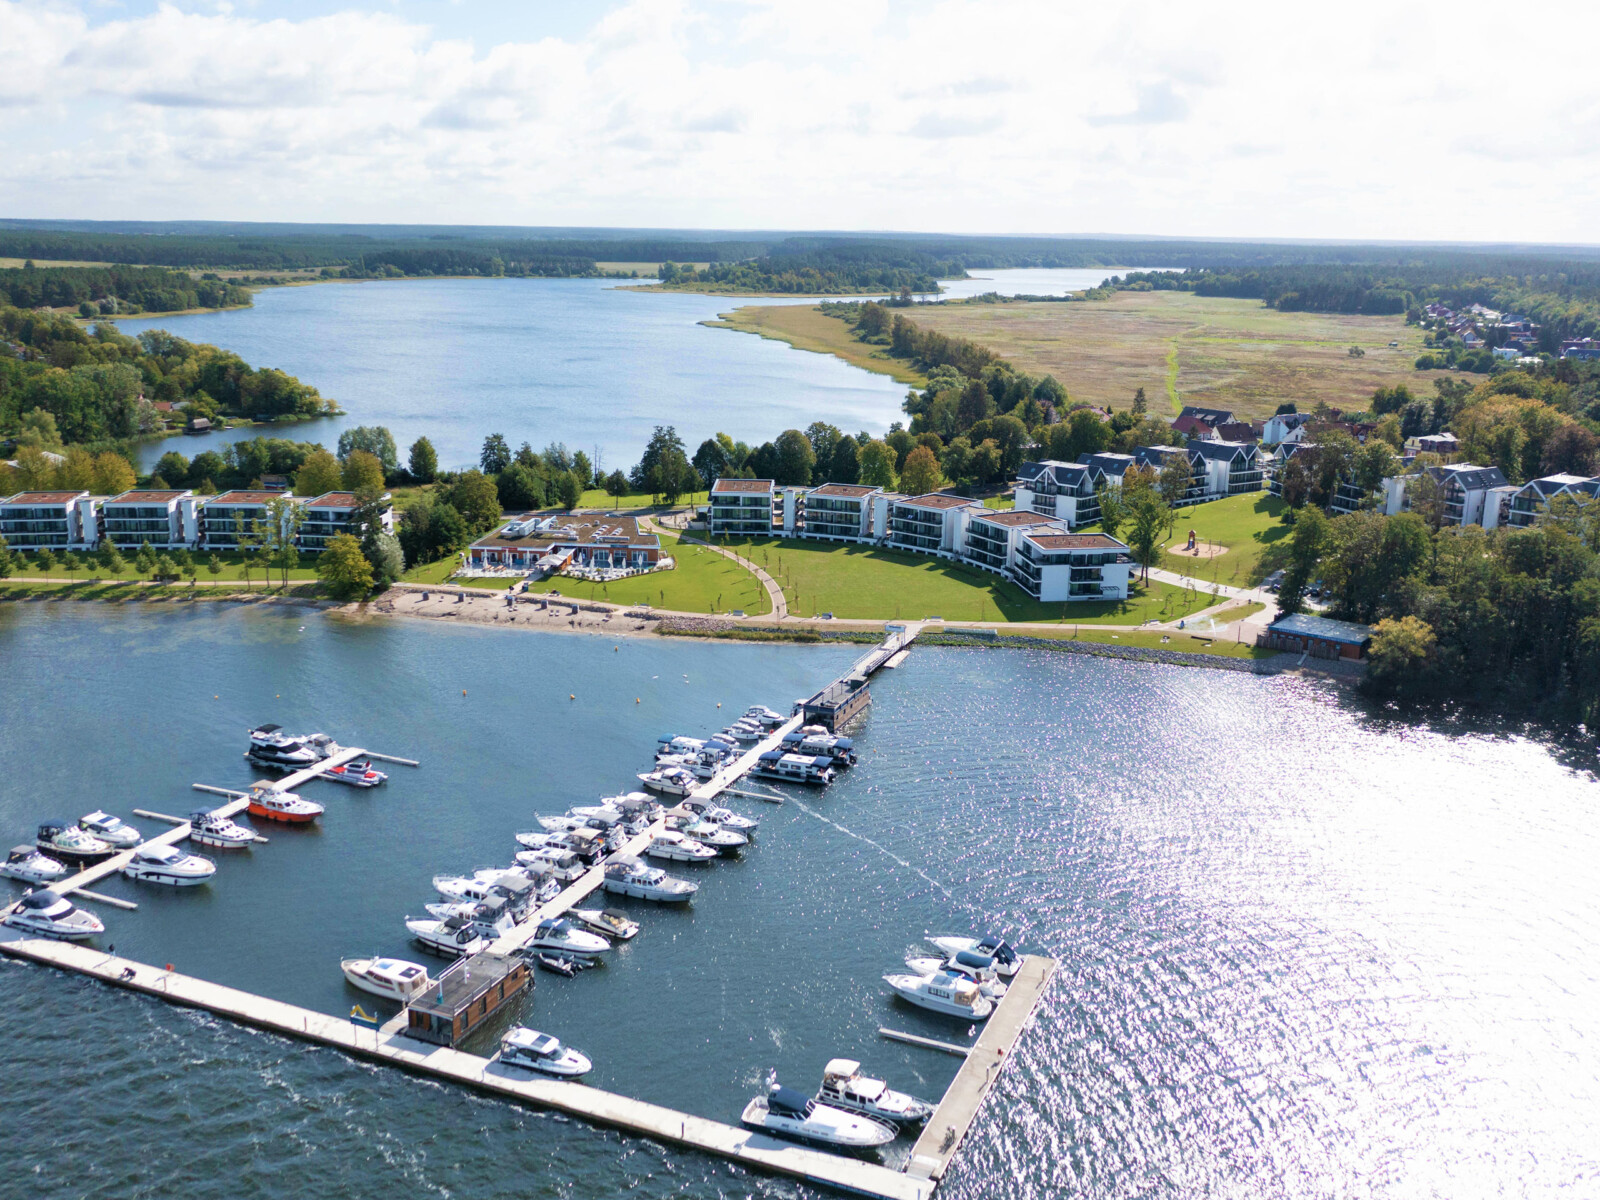 Luftaufnahme des Maremüritz Yachthafen Resorts in Waren (Müritz) zwischen zwei Seen.